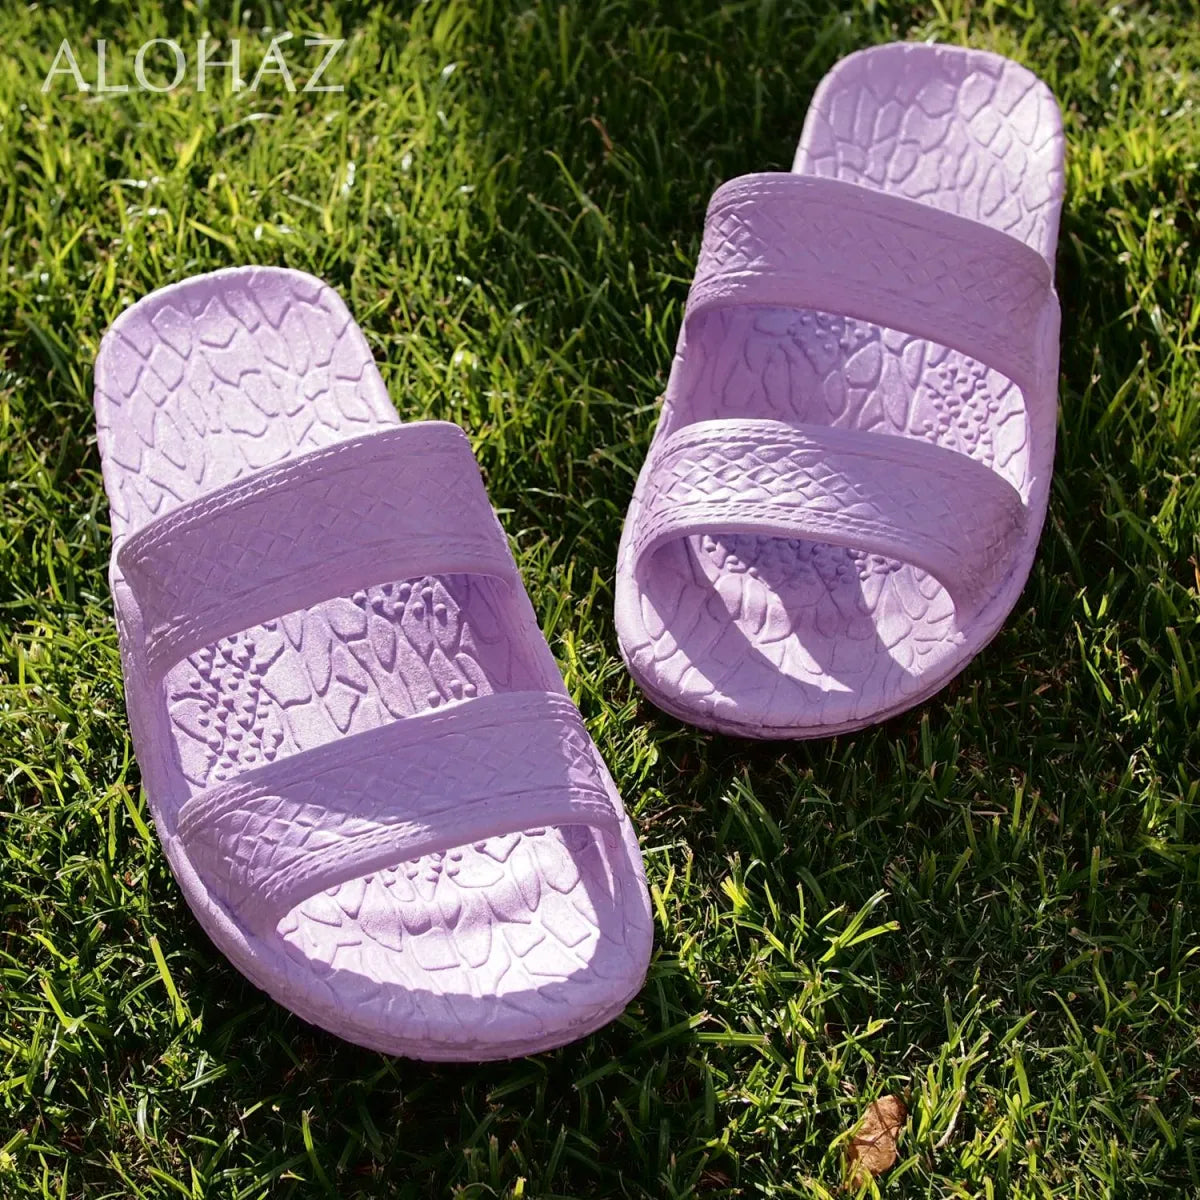 Lilac classic jandals® - pali hawaii jesus sandals